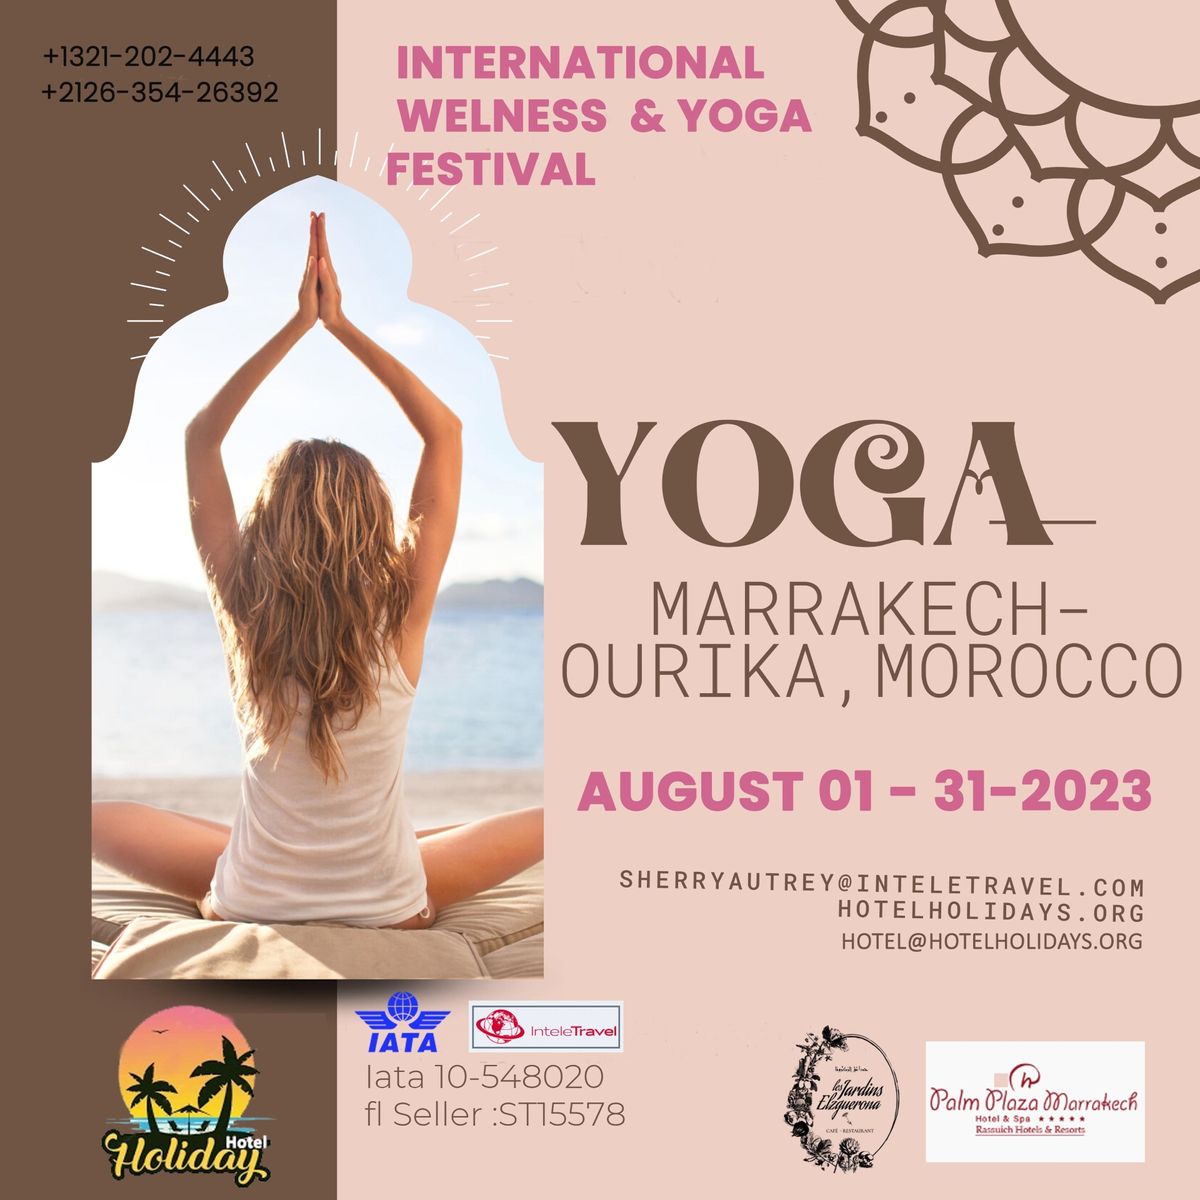 YOGA WELLNESS FESTIVAL in Marrakech - Ourika - August 15-15 September 2023 EUROPE AN YOGA FESTIVAL